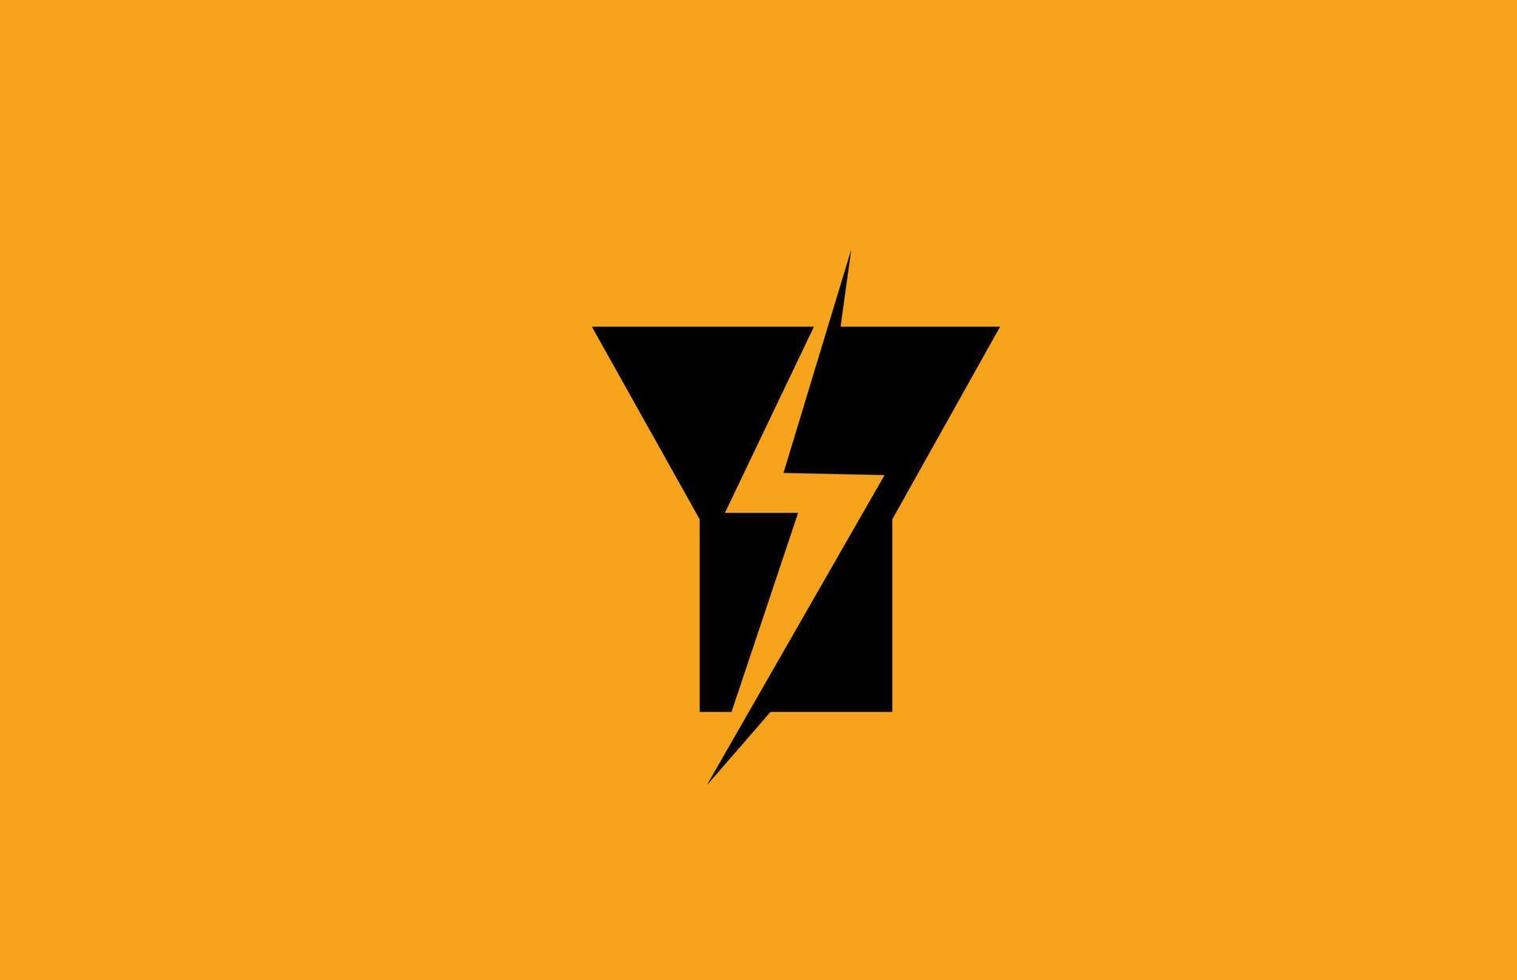 y zwart geel alfabet logo letterpictogram. elektrisch bliksemontwerp voor stroom- of energiebedrijven vector